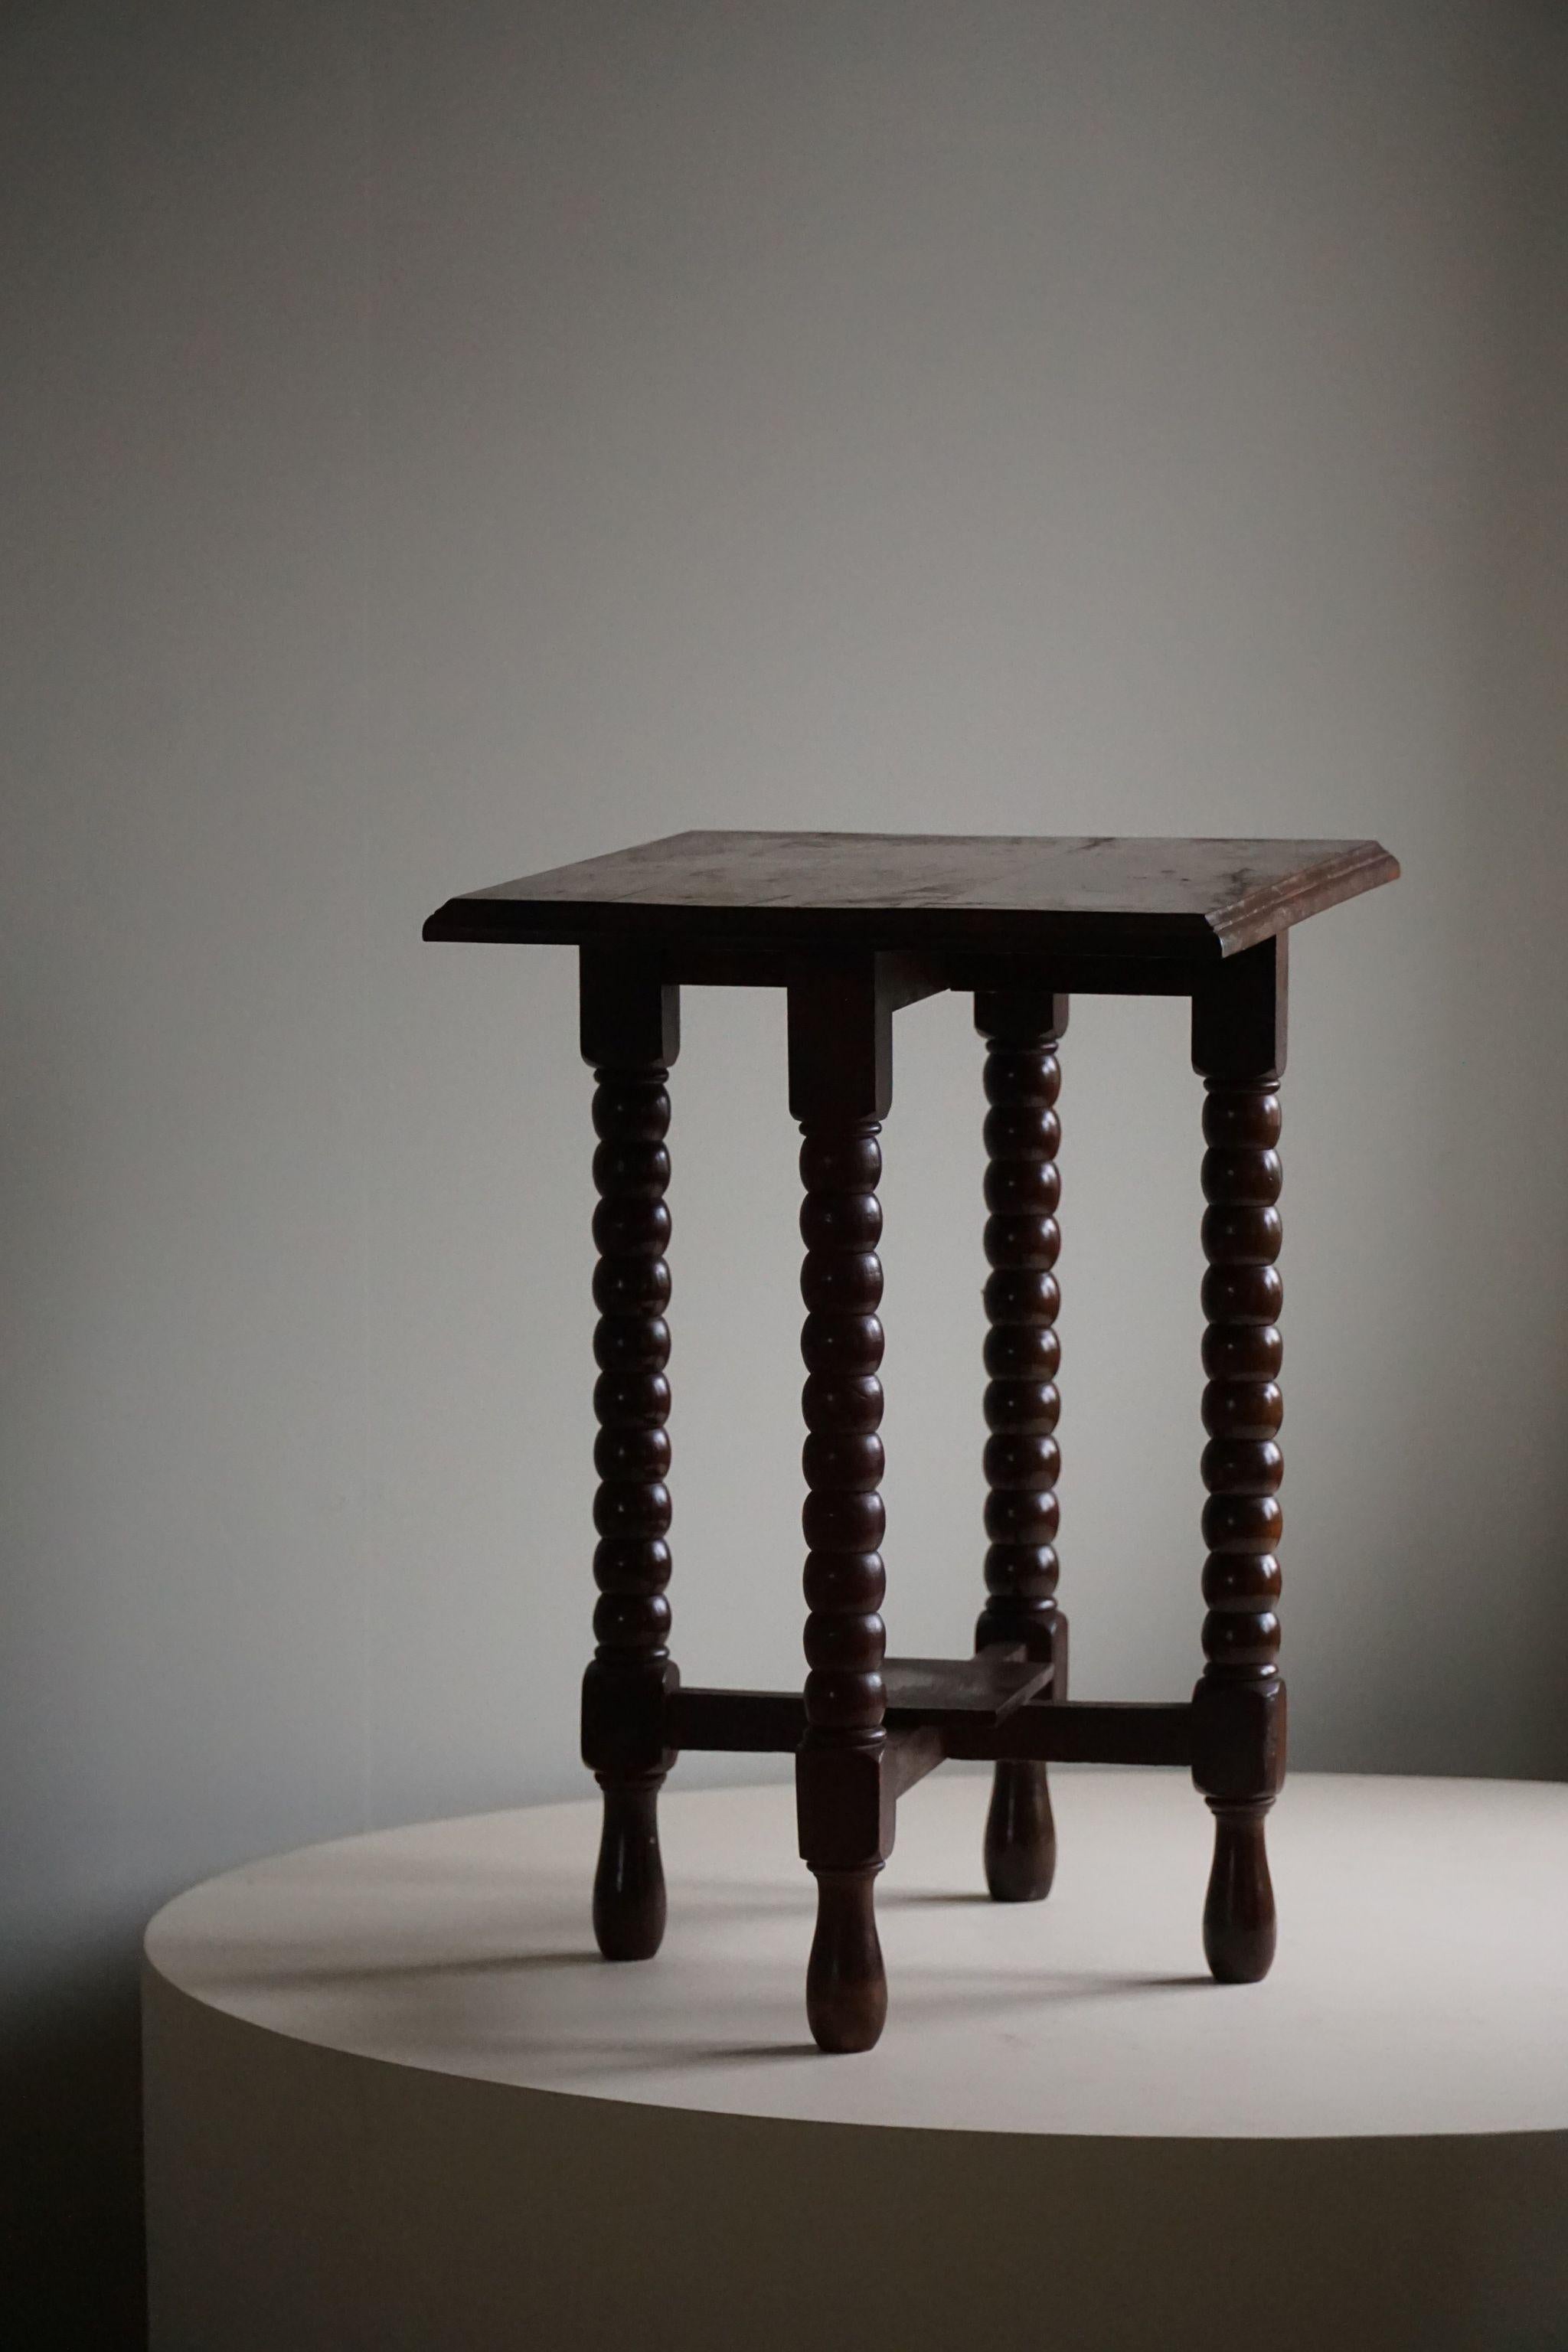 Une table d'appoint classique de style moderne français, fabriquée à la main, en chêne aux tons chauds. Fabriqué dans les années 1950 par un ébéniste français. Fabriquée avec soin et attention aux détails, cette table d'appoint respire l'élégance et